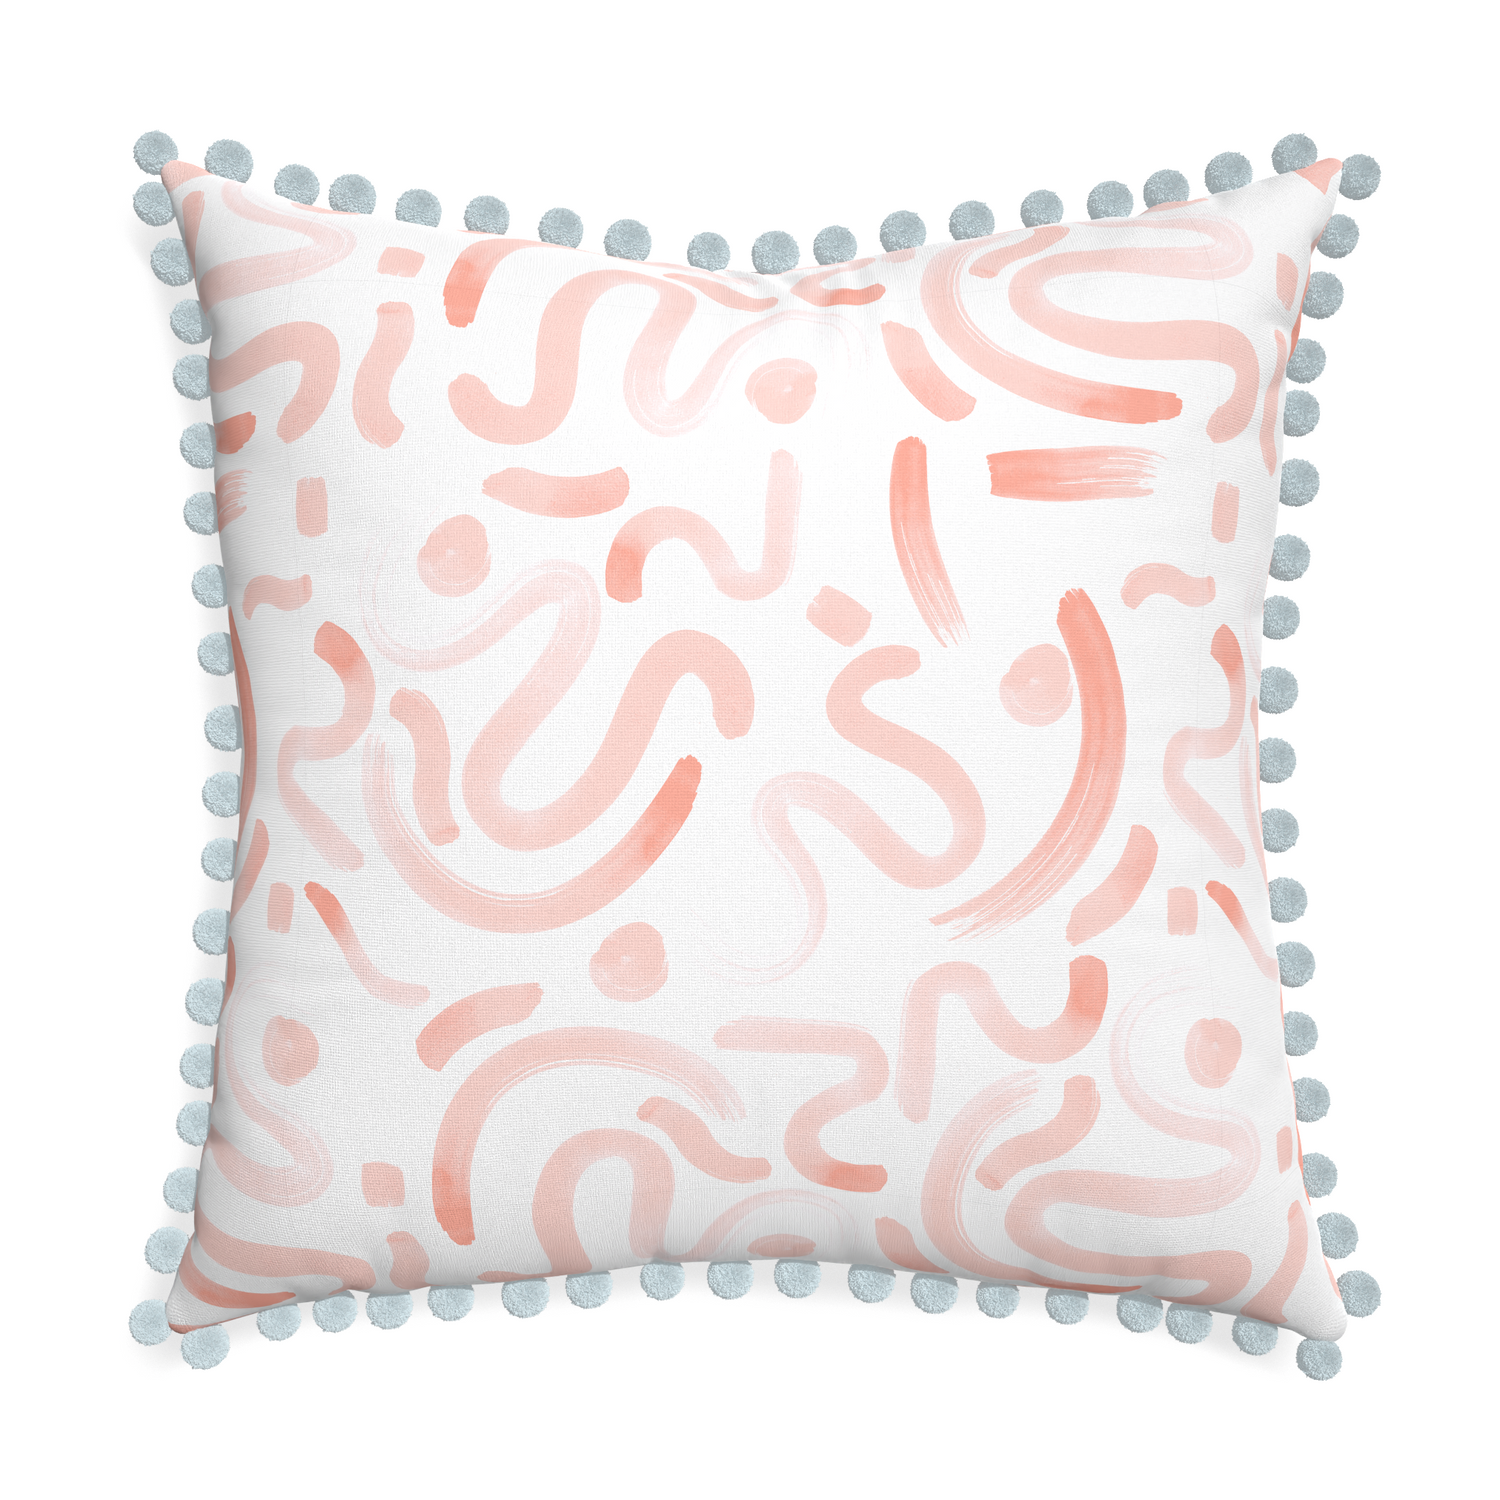 Euro-sham hockney pink custom pillow with powder pom pom on white background